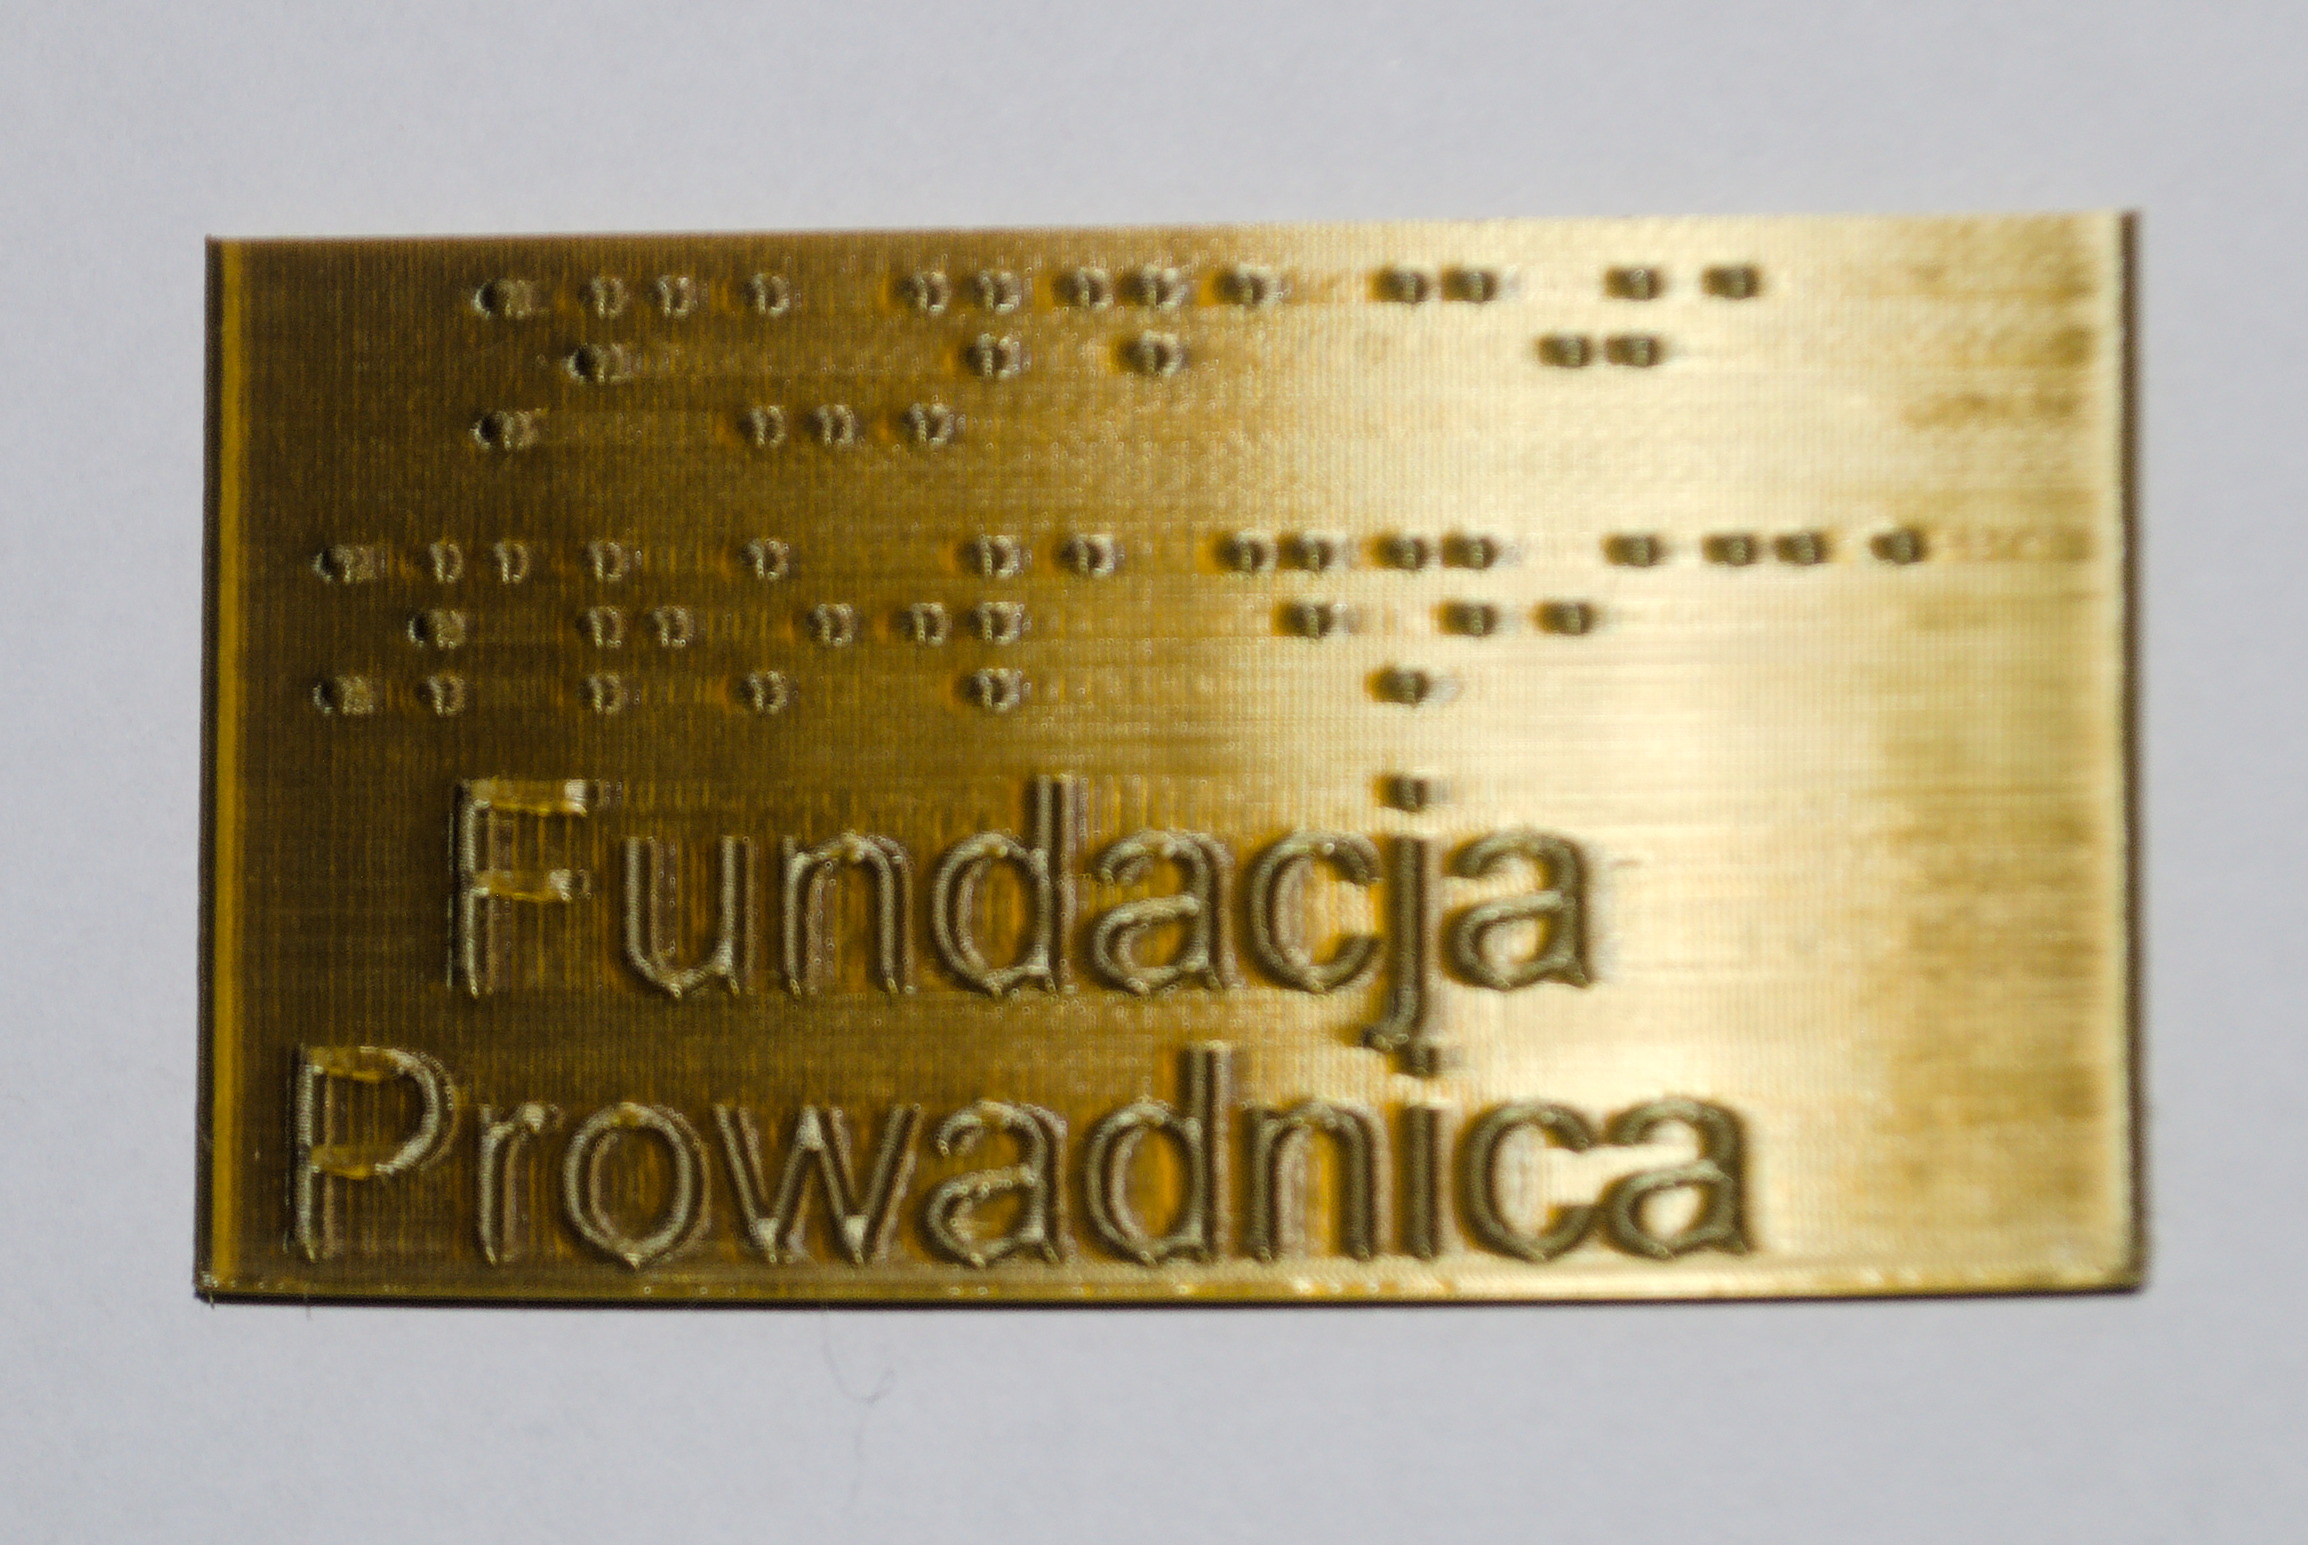 Tabliczka z PLA domieszkowanego mosiądzem, z brajlowskim i czarnodrukowym napisem "Fundacja Prowadnica"